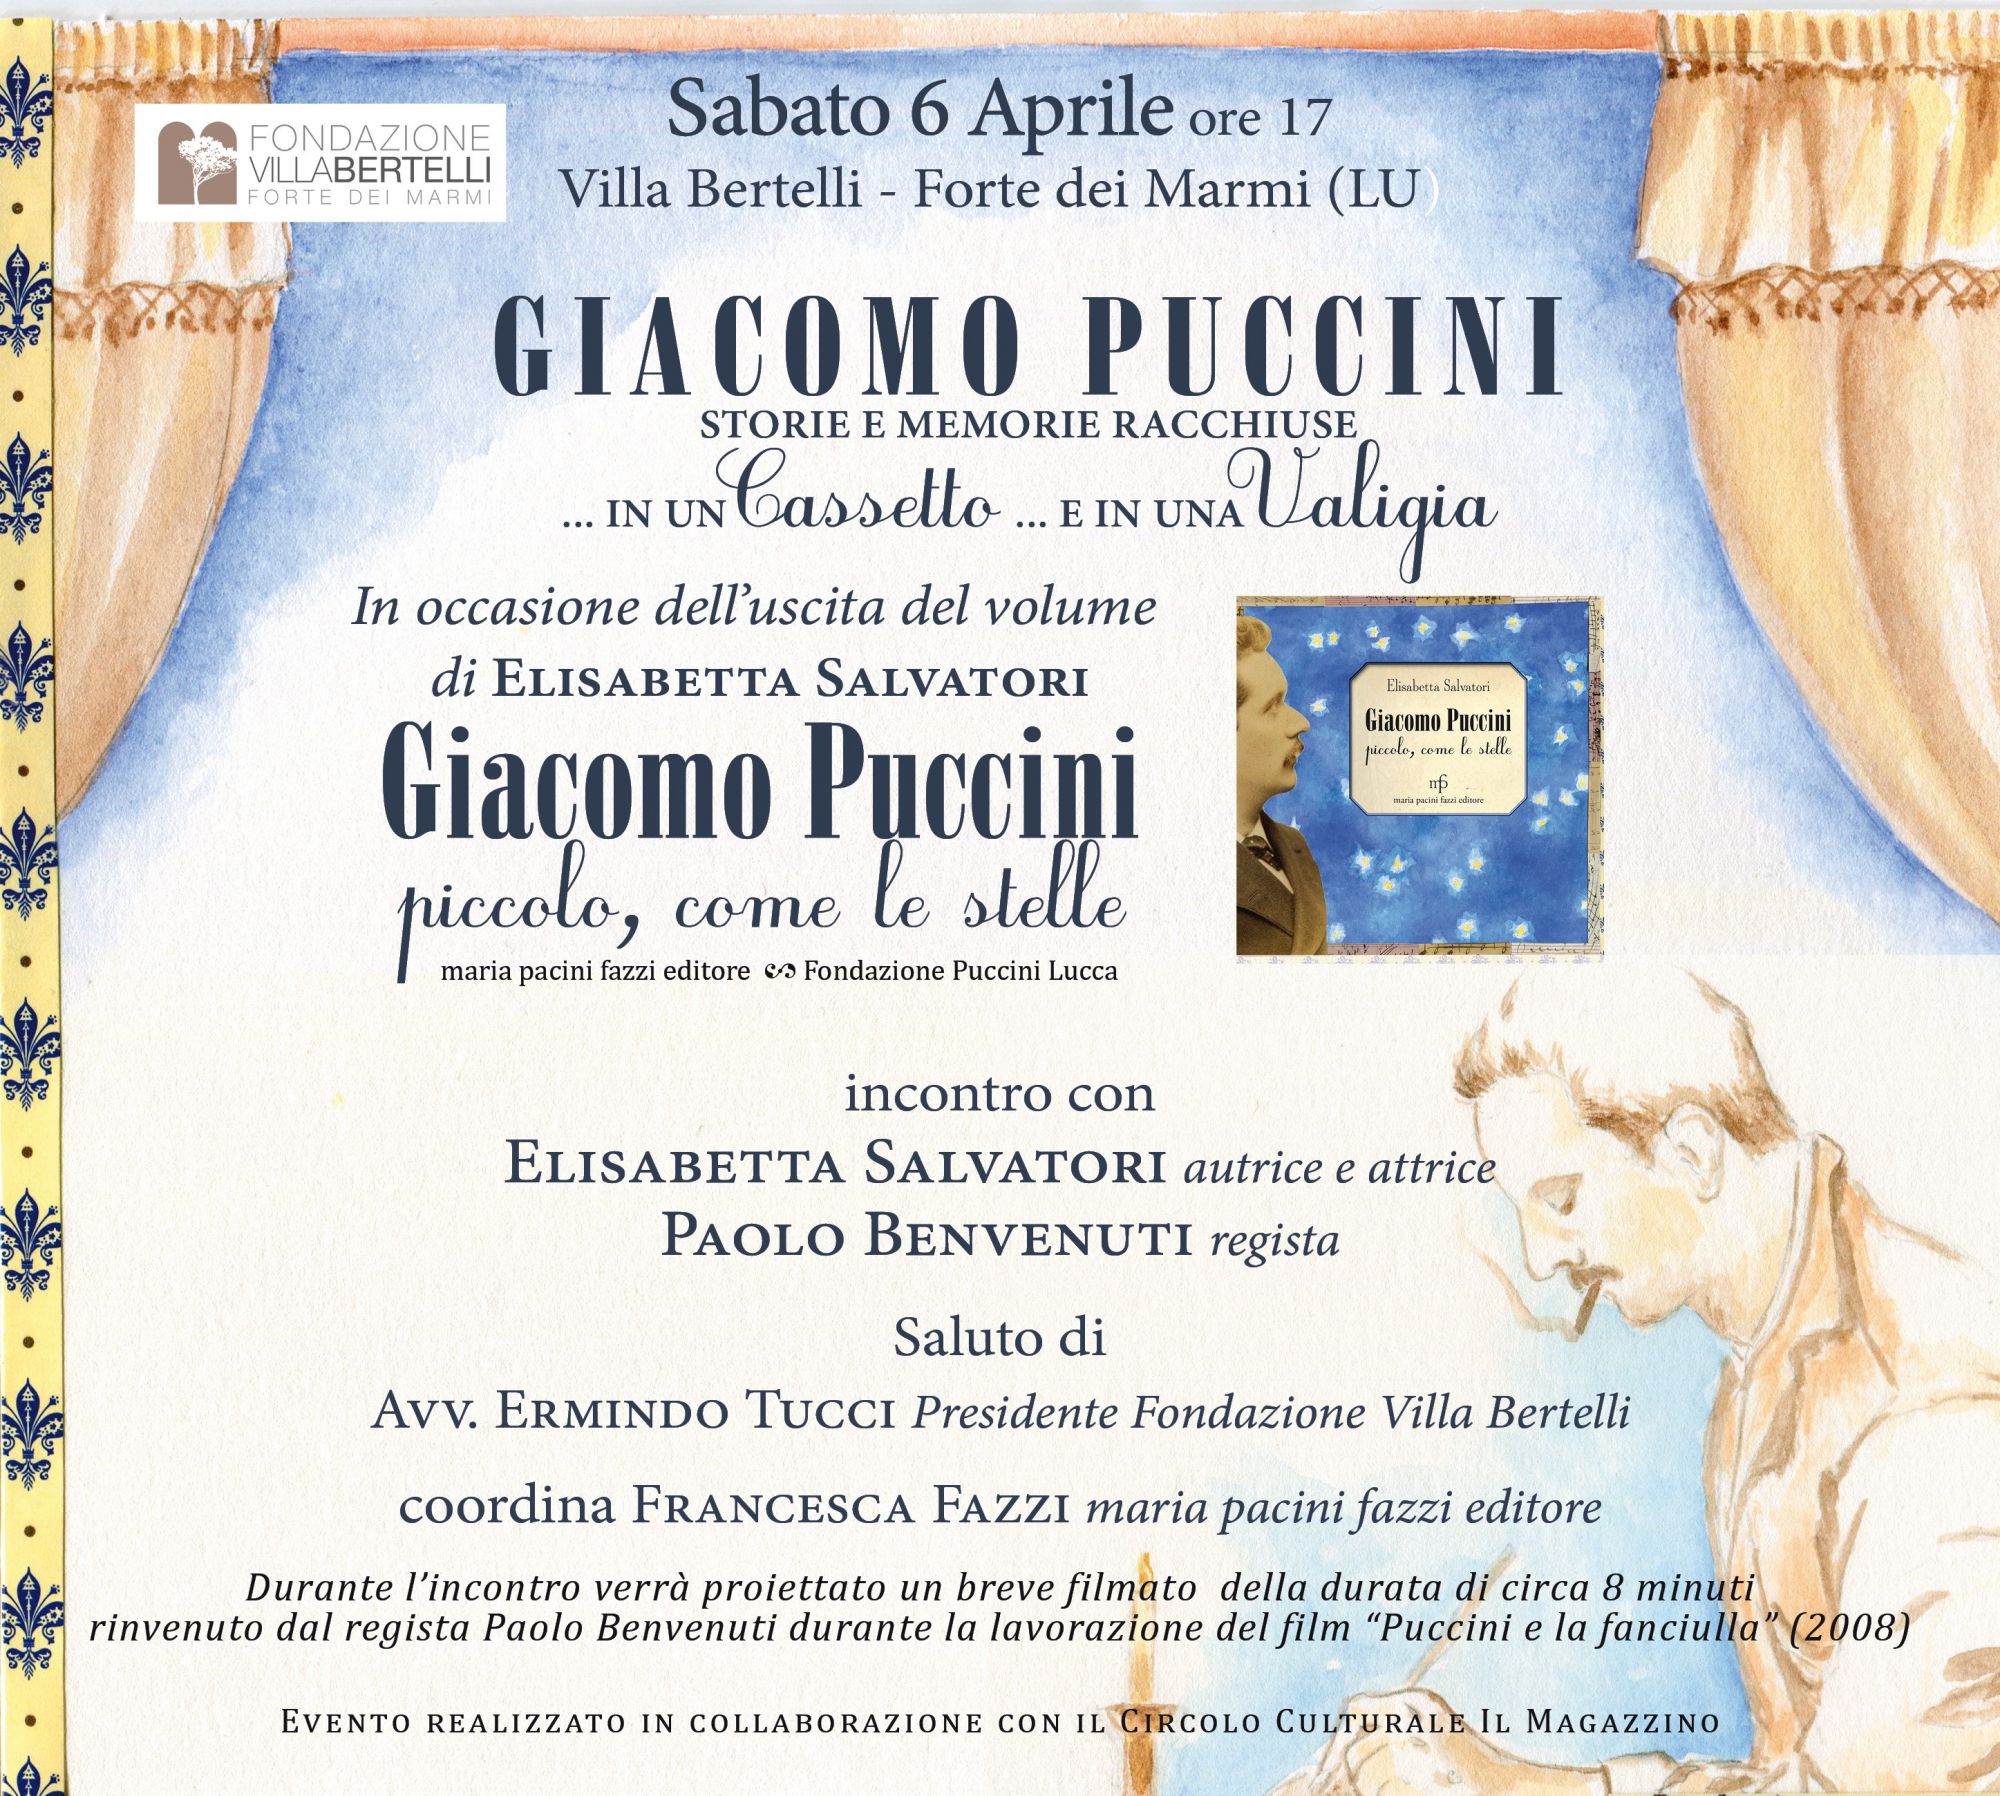 “Piccolo come le stelle”. La vita di Giacomo Puccini a Villa Bertelli